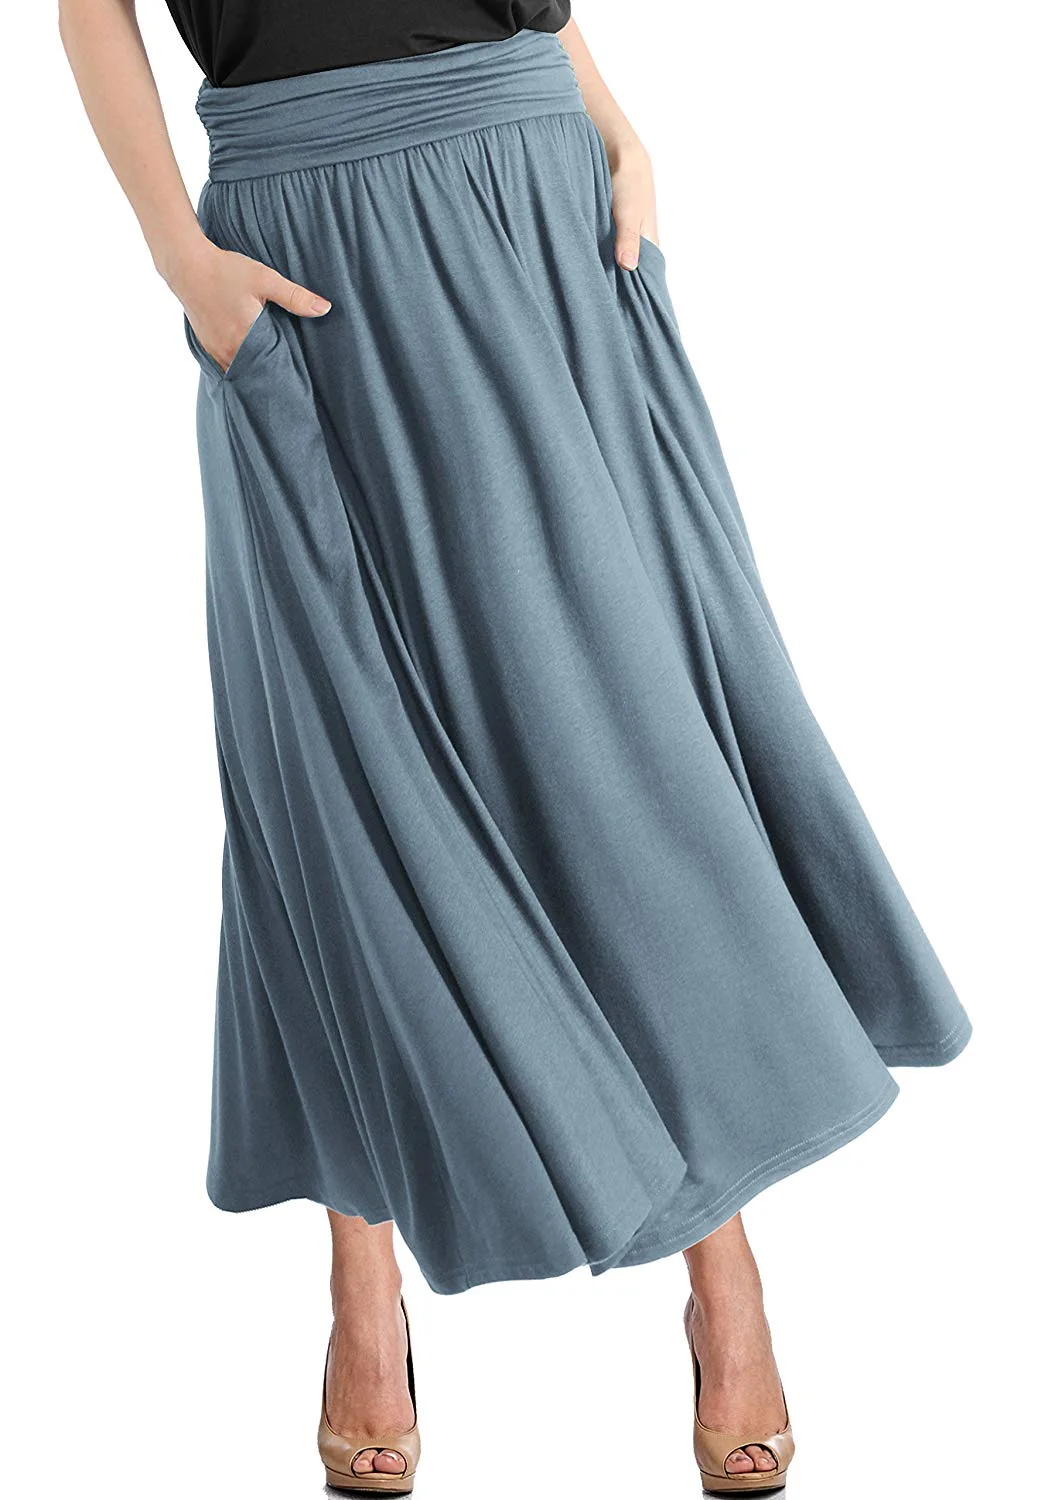 Shirring Skirt Women's High Waist Fold Over Pocket Shirring Skirt